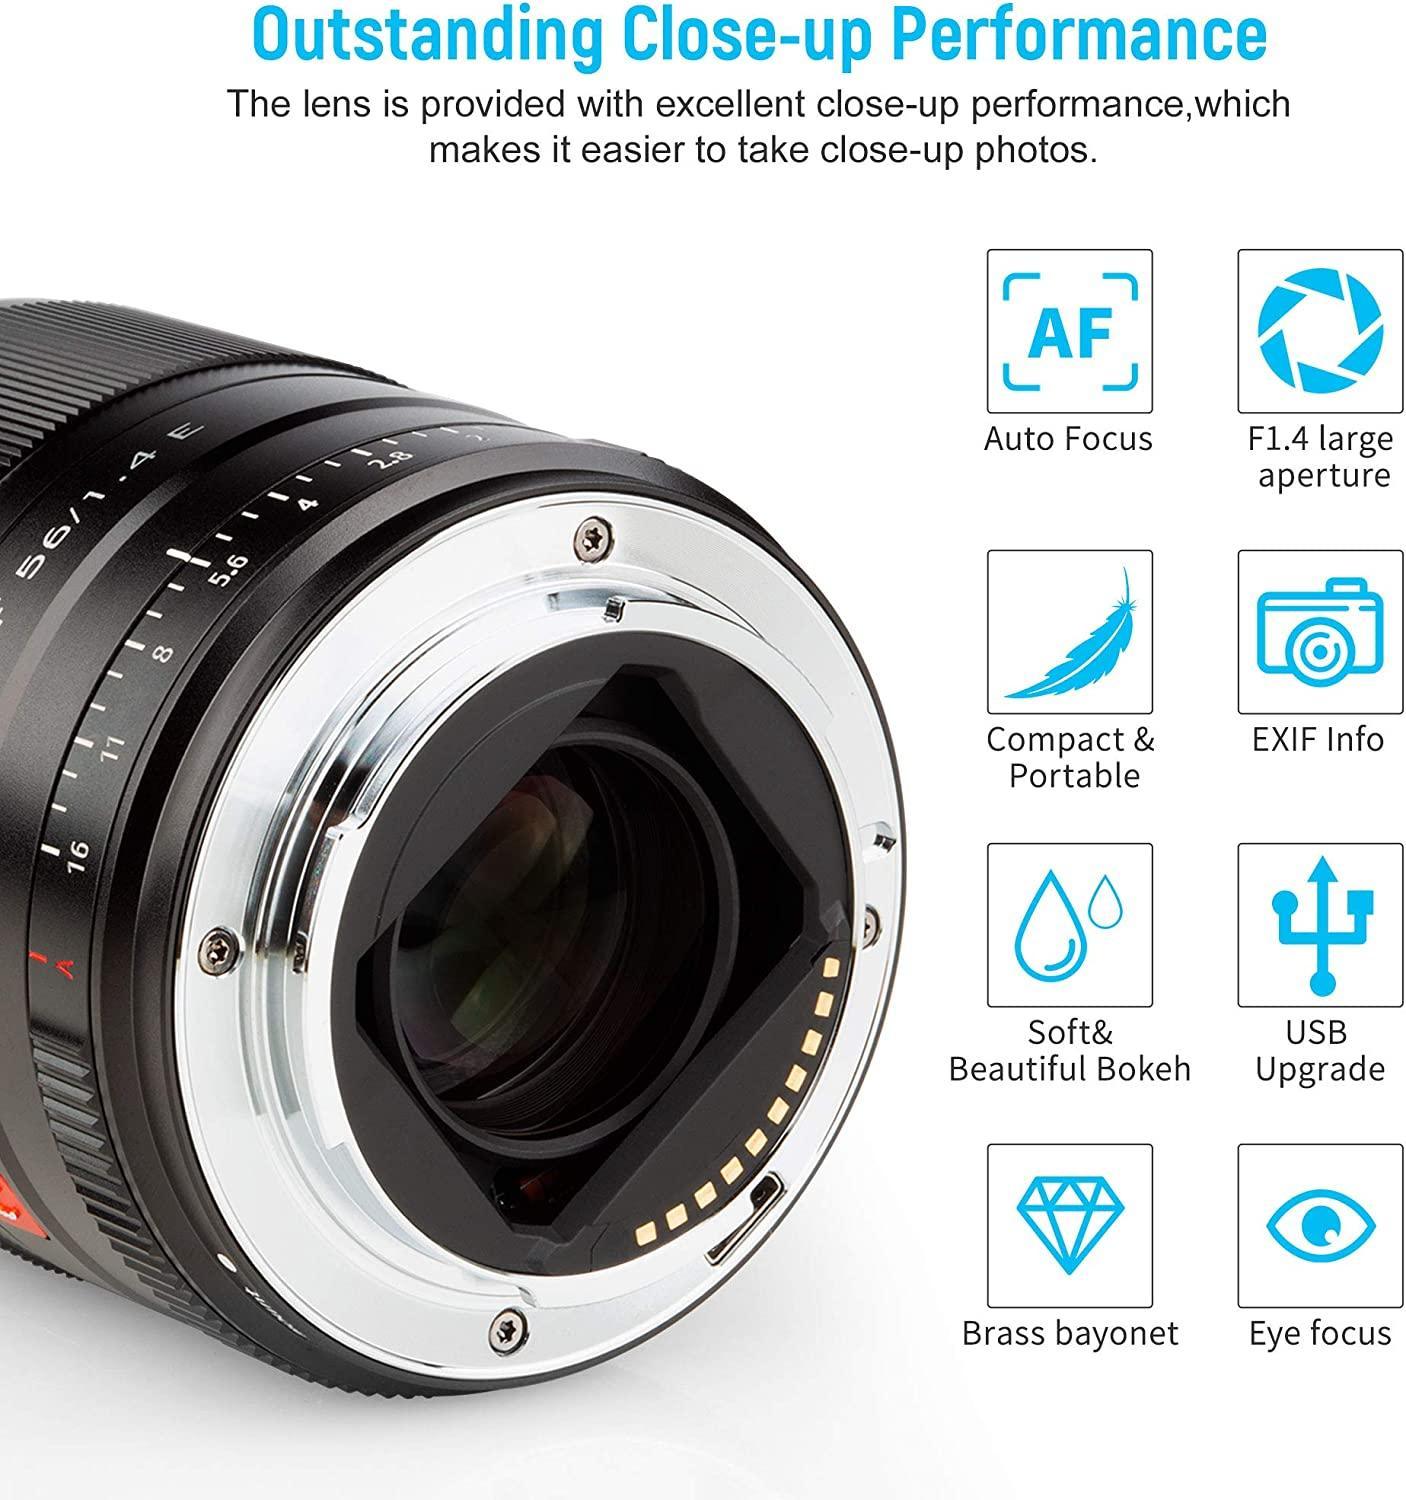 Viltrox 56mm F1.4 Autofocus Portrait Lens for Sony E-Mount Cameras